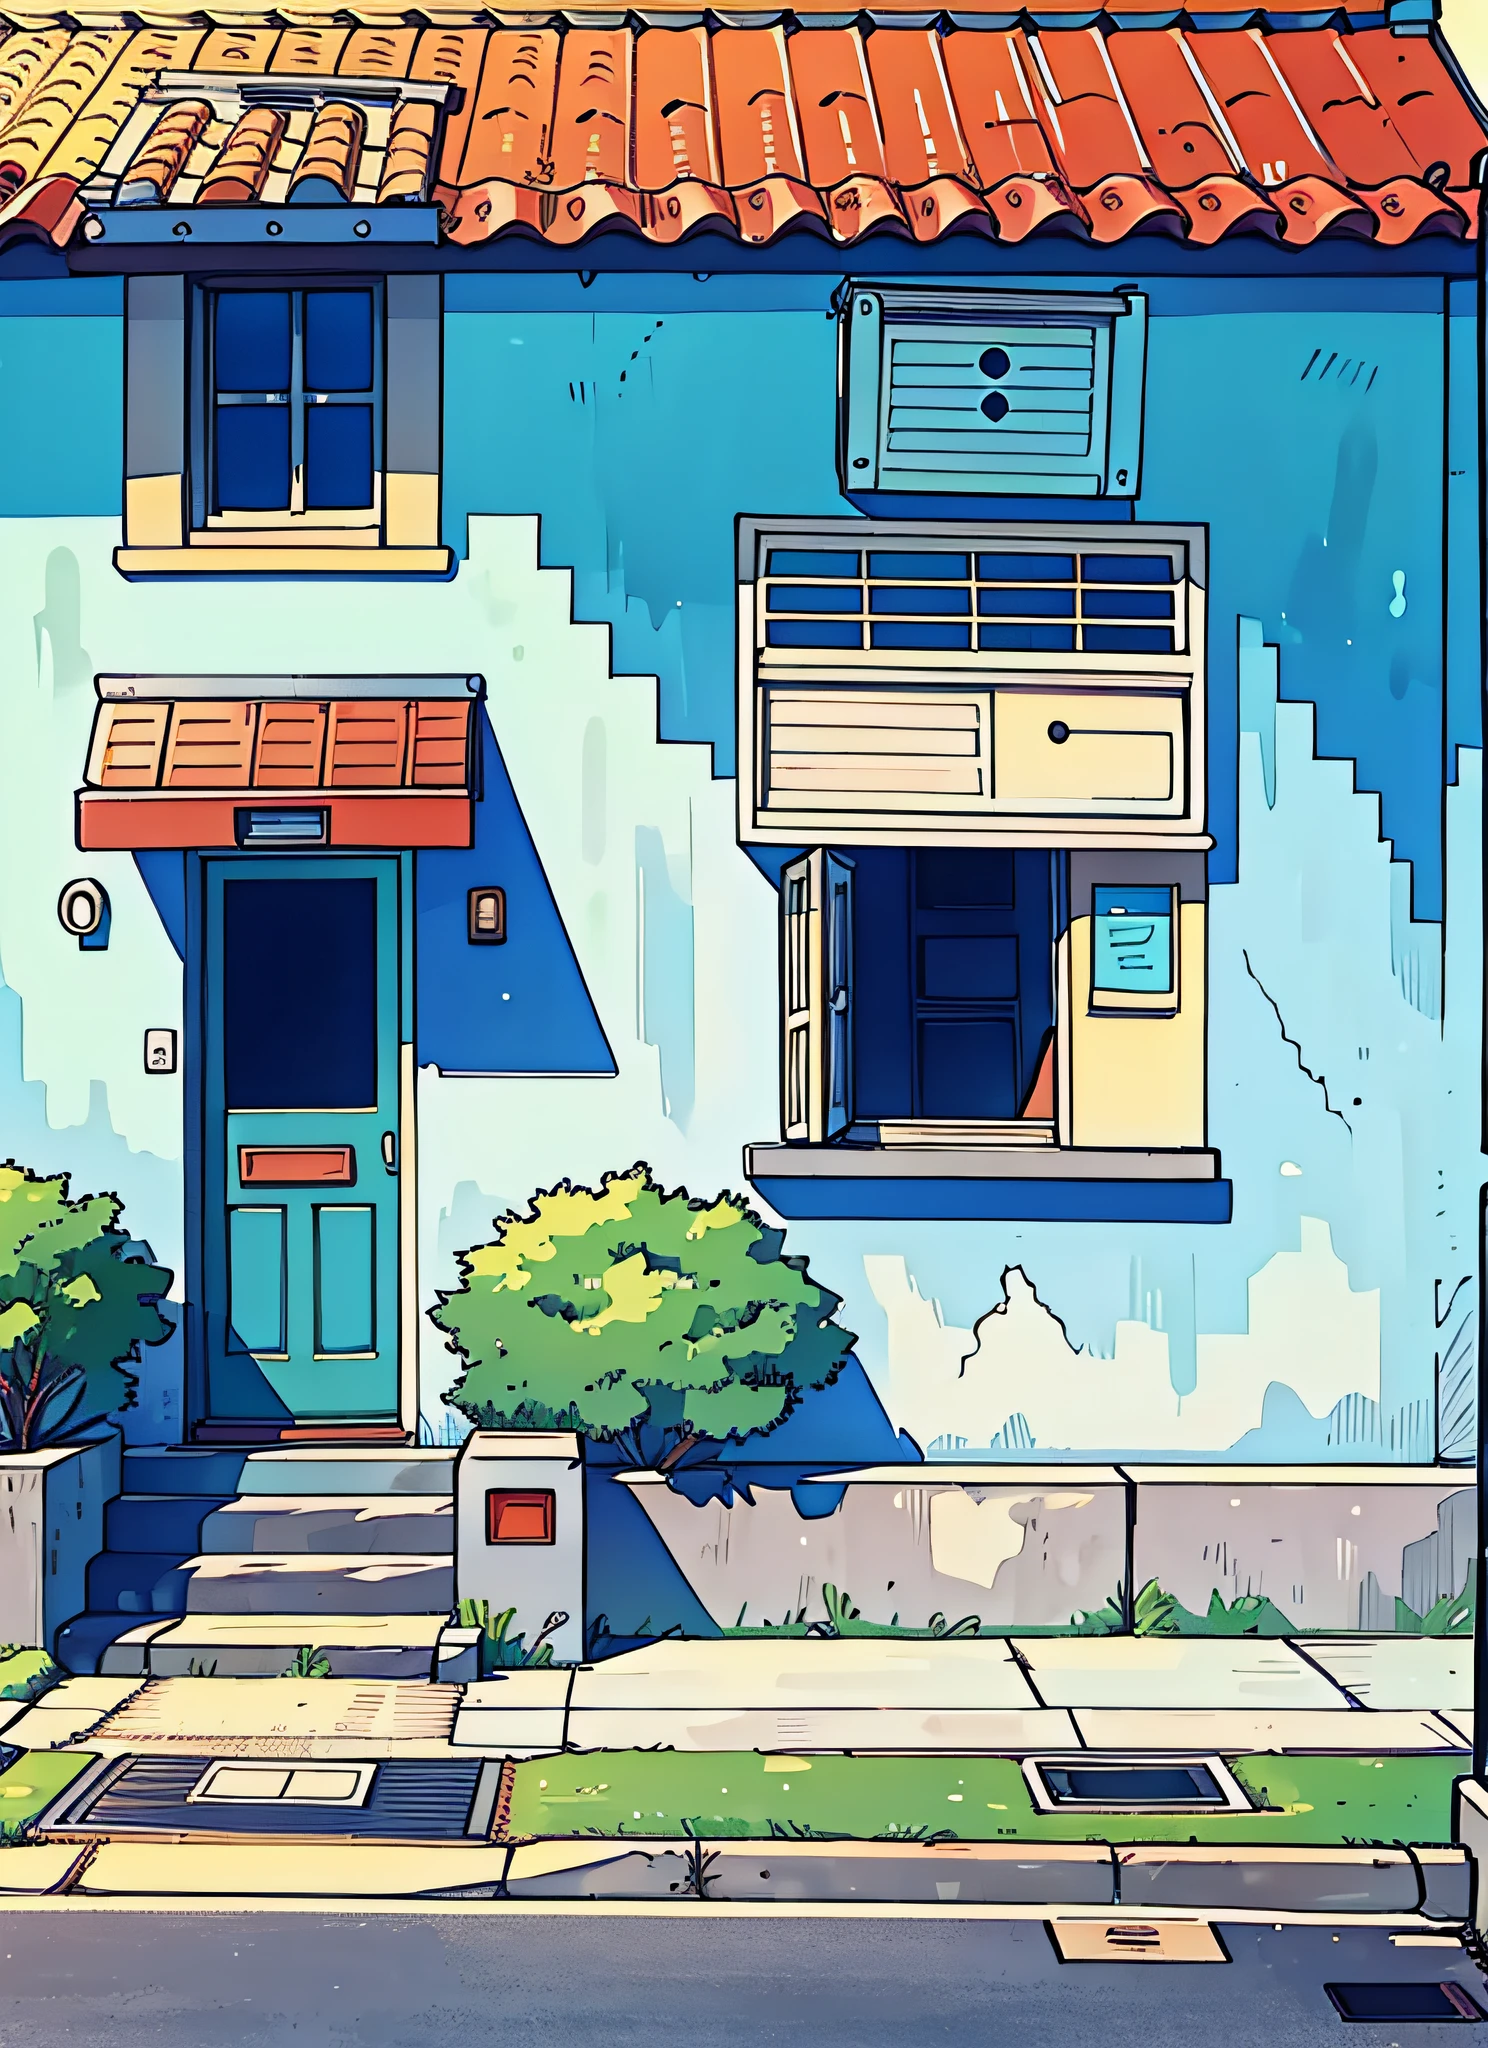 (beste Qualität:0.8), (beste Qualität:0.8), (((keine Menschen))), gebrochene introspektive perfekte Anime-Illustration, Vorderansicht, ein Haus mit einem kleinen Briefkasten davor